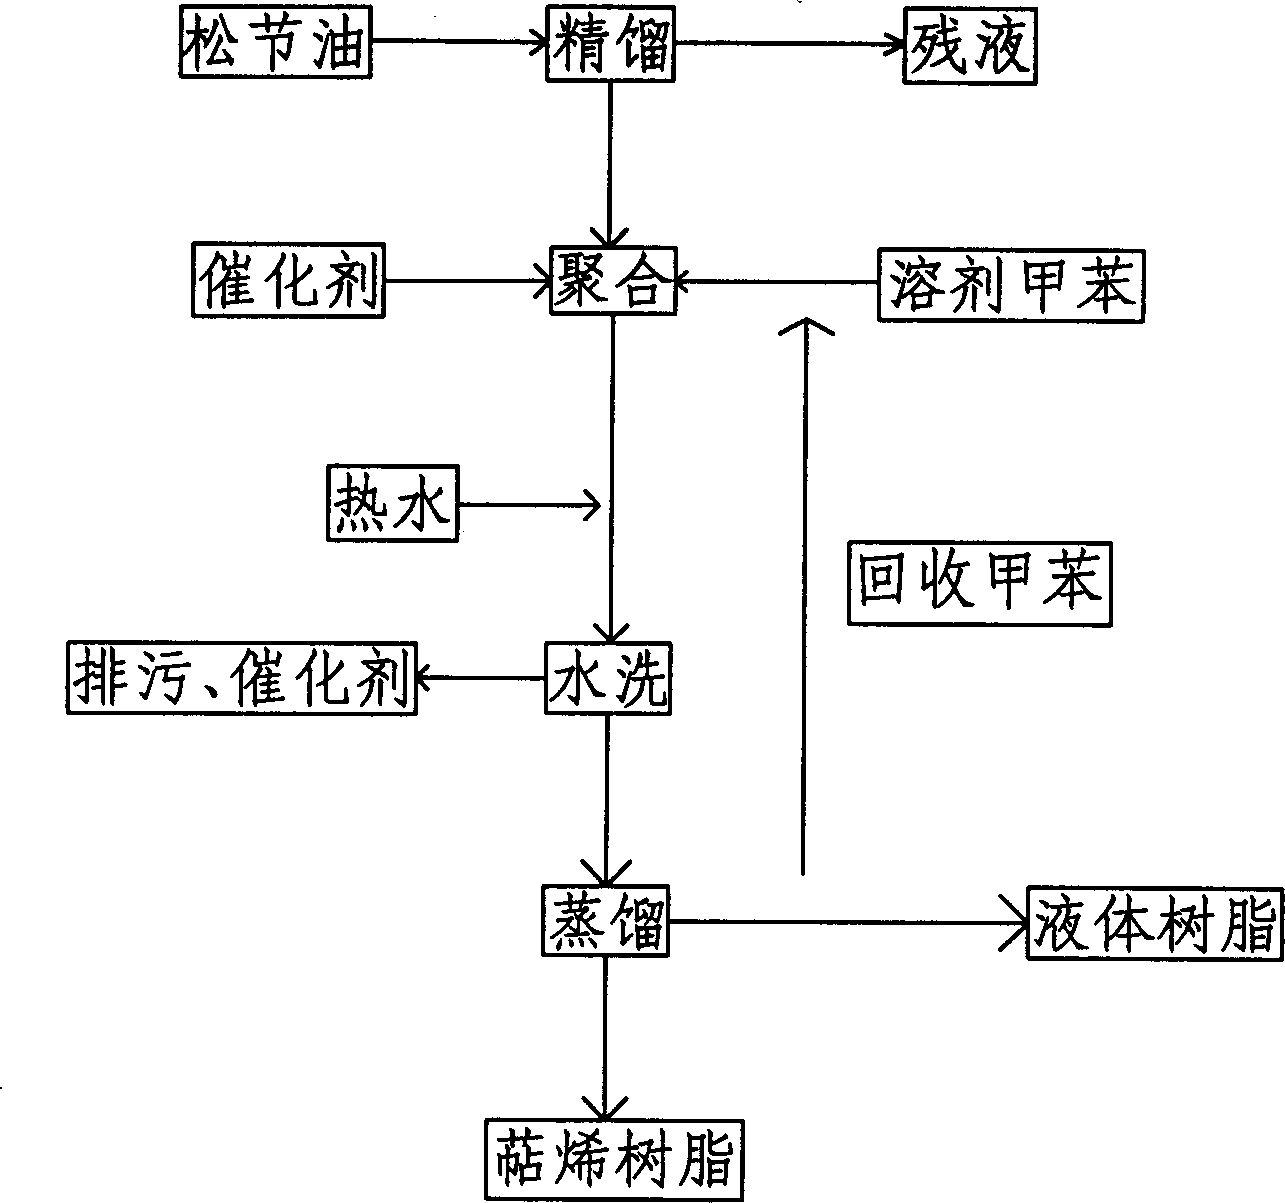 Production method of terpene resin